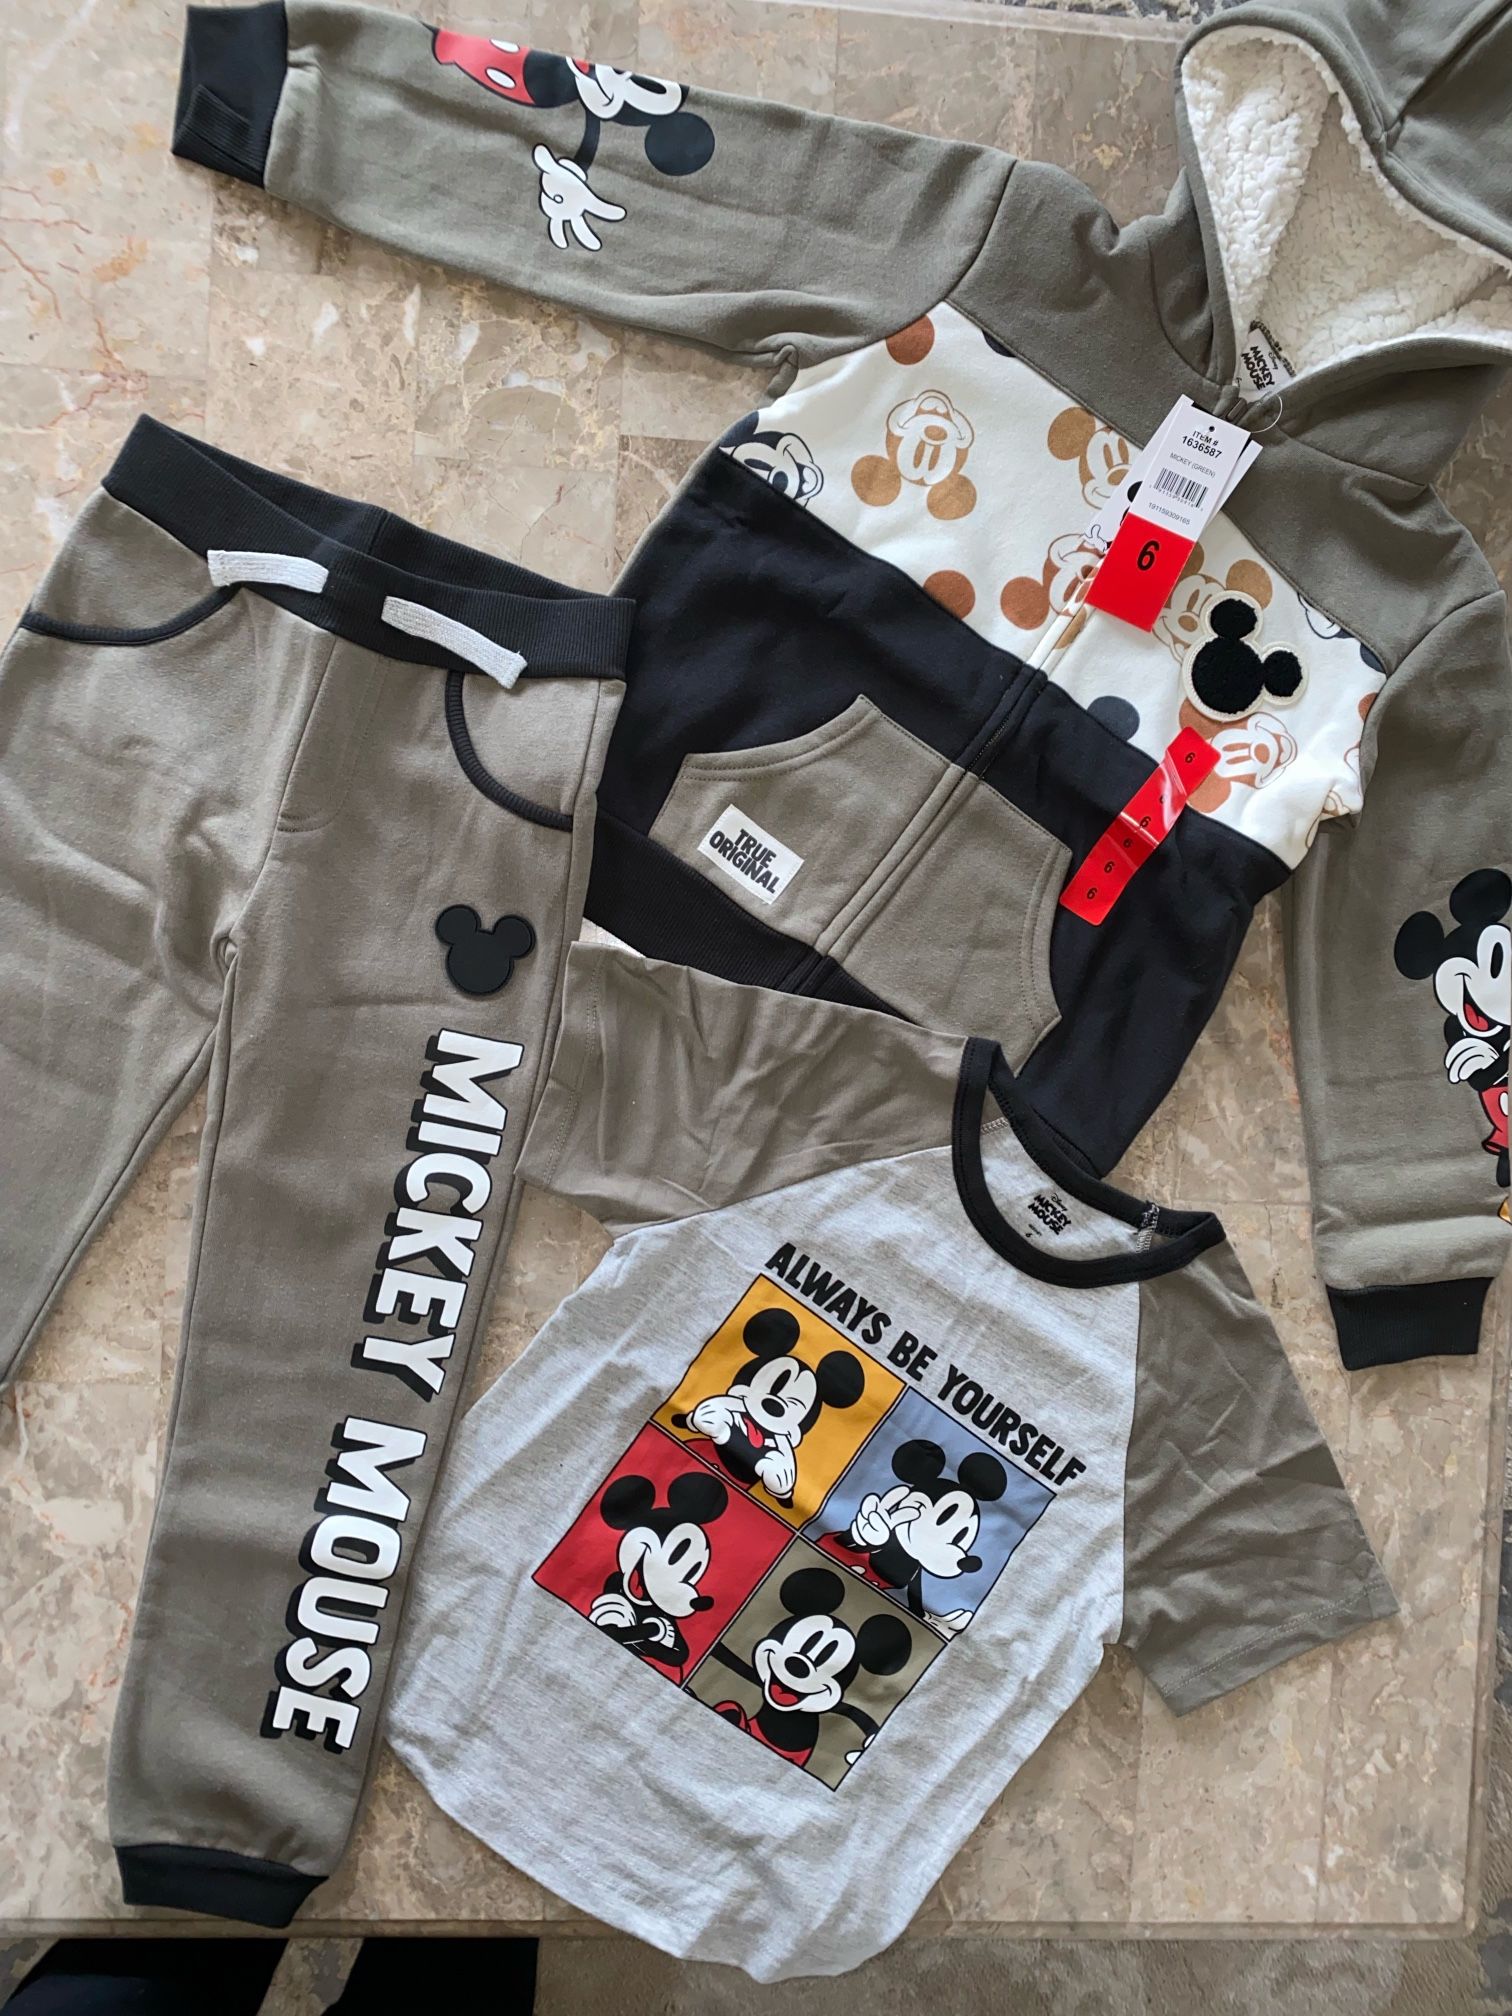 Disney’s Mickey Boy’s 3-Piece Jacket Set